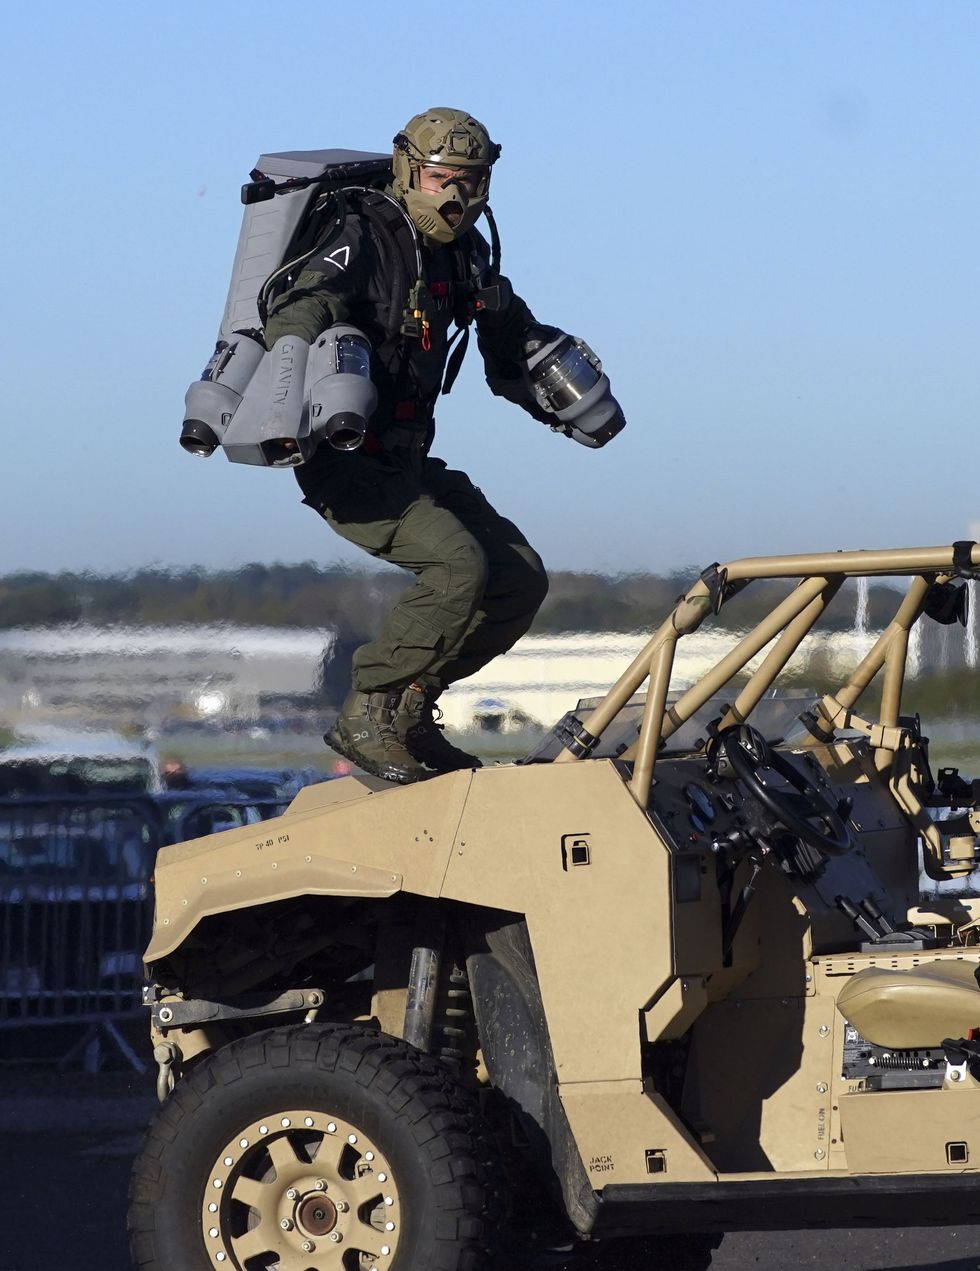 Jet Man lands on a vehicle (Steve Parsons/PA)